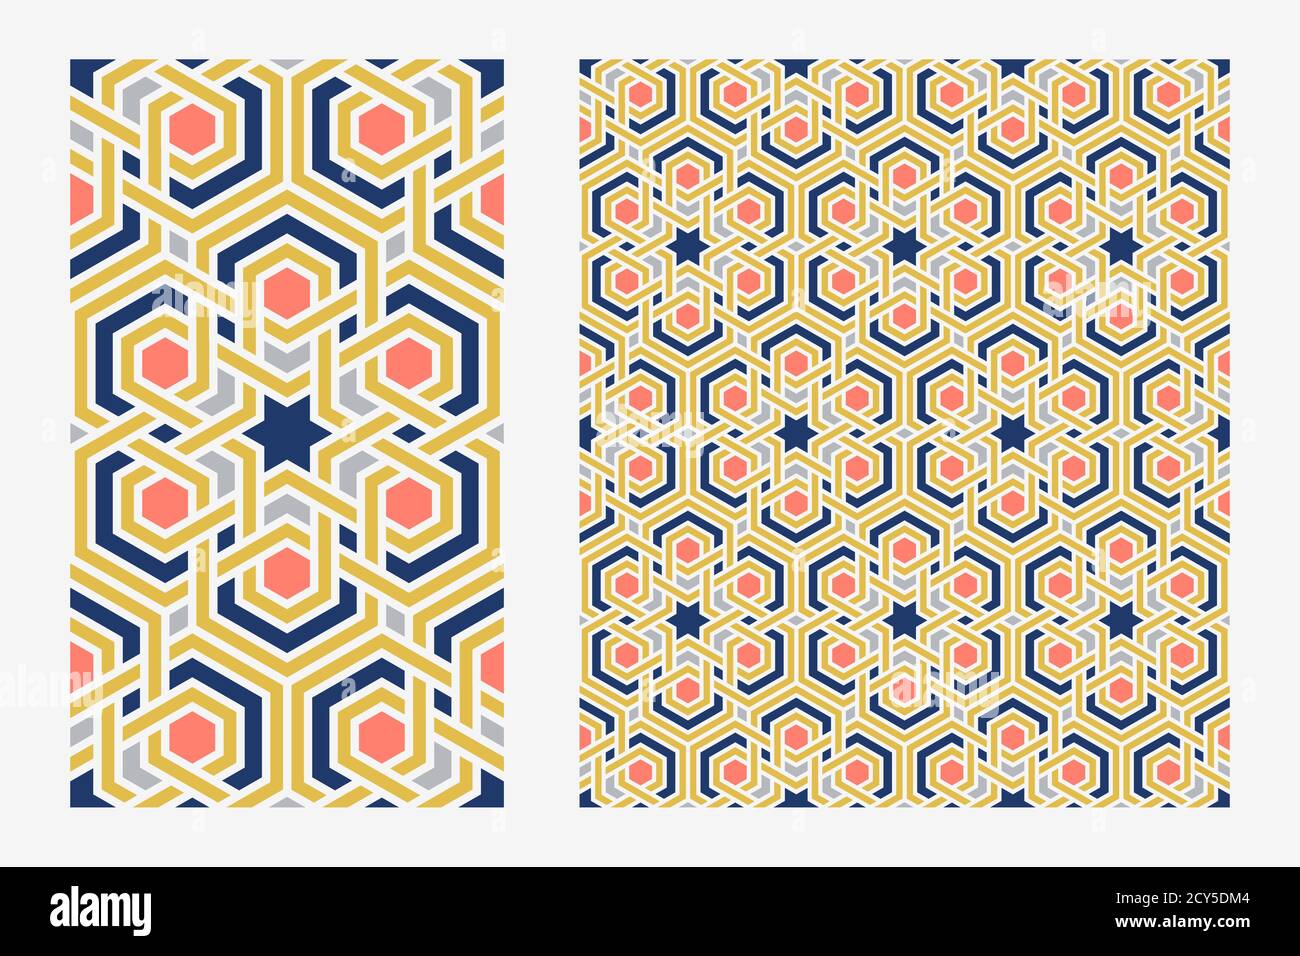 Traditionelle arabische islam geometrische Kunst. Einzelne Bodenfliesen und Arabeske nahtlose Wiederholung Muster. Marokkanisch gemusterte Wandfliesen. Vektorgrafik. Stock Vektor